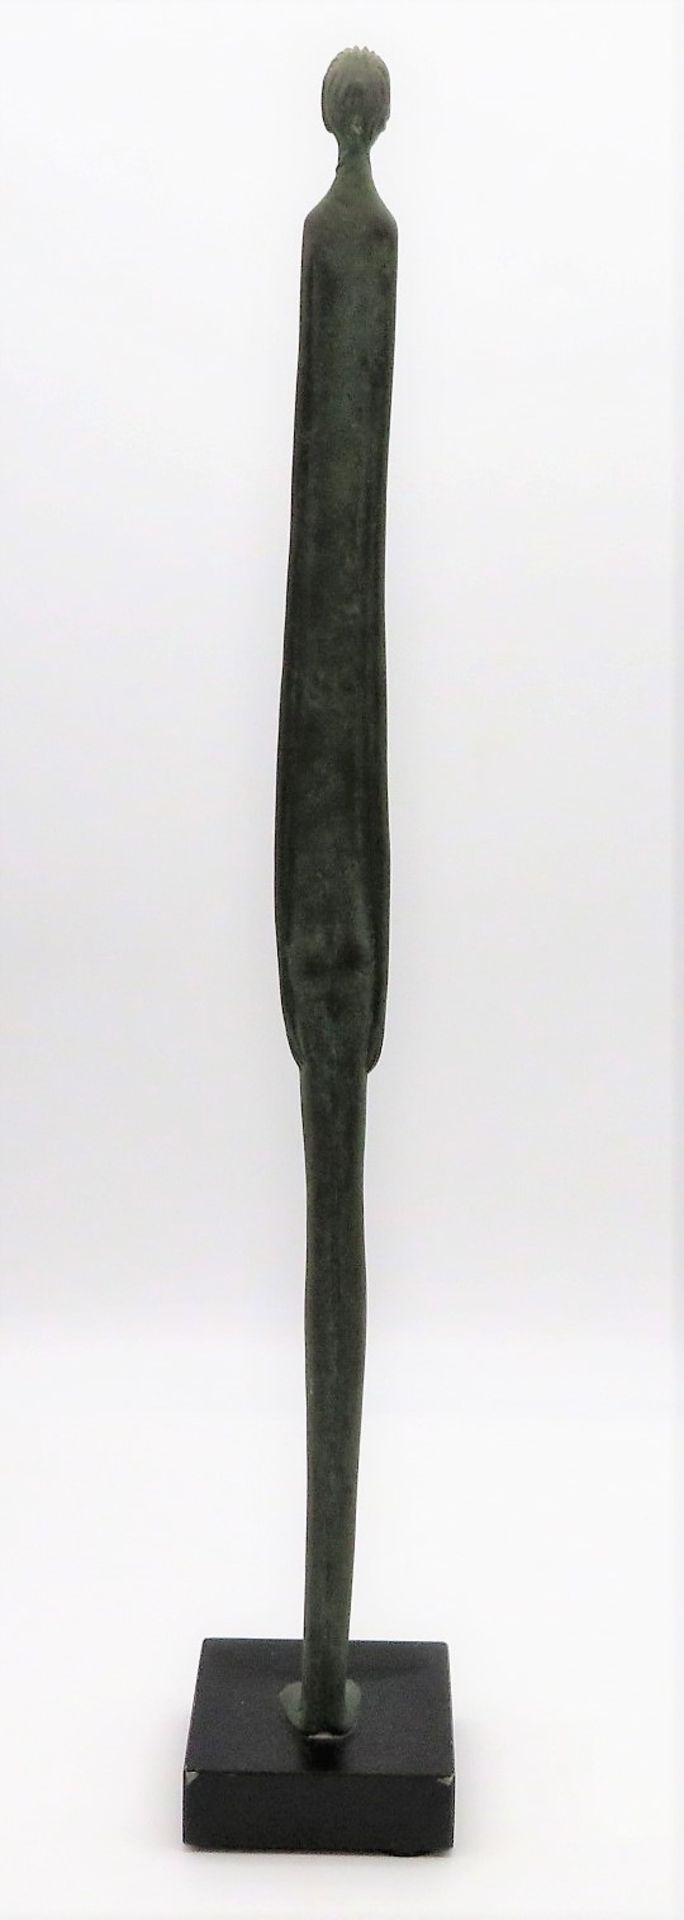 Nach Giacometti, Stehender Jüngling, Bronze patiniert, quadratischer Marmorsockel, h 58 cm, d 4 cm. - Bild 2 aus 2